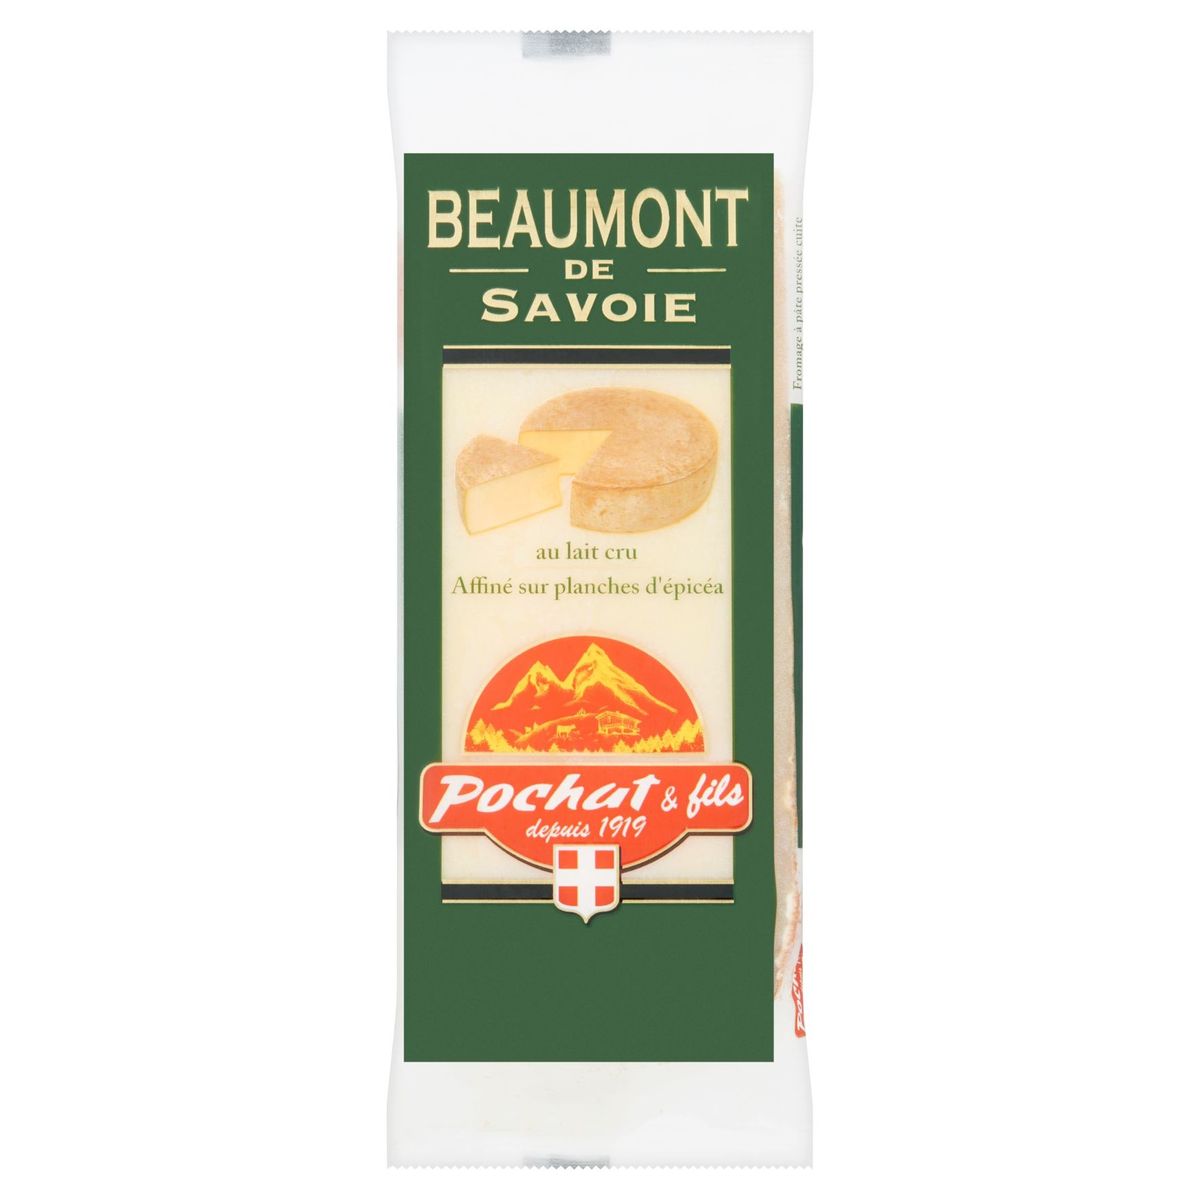 Pochat & Fils Beaumont de Savoie au Lait Cru 200 g